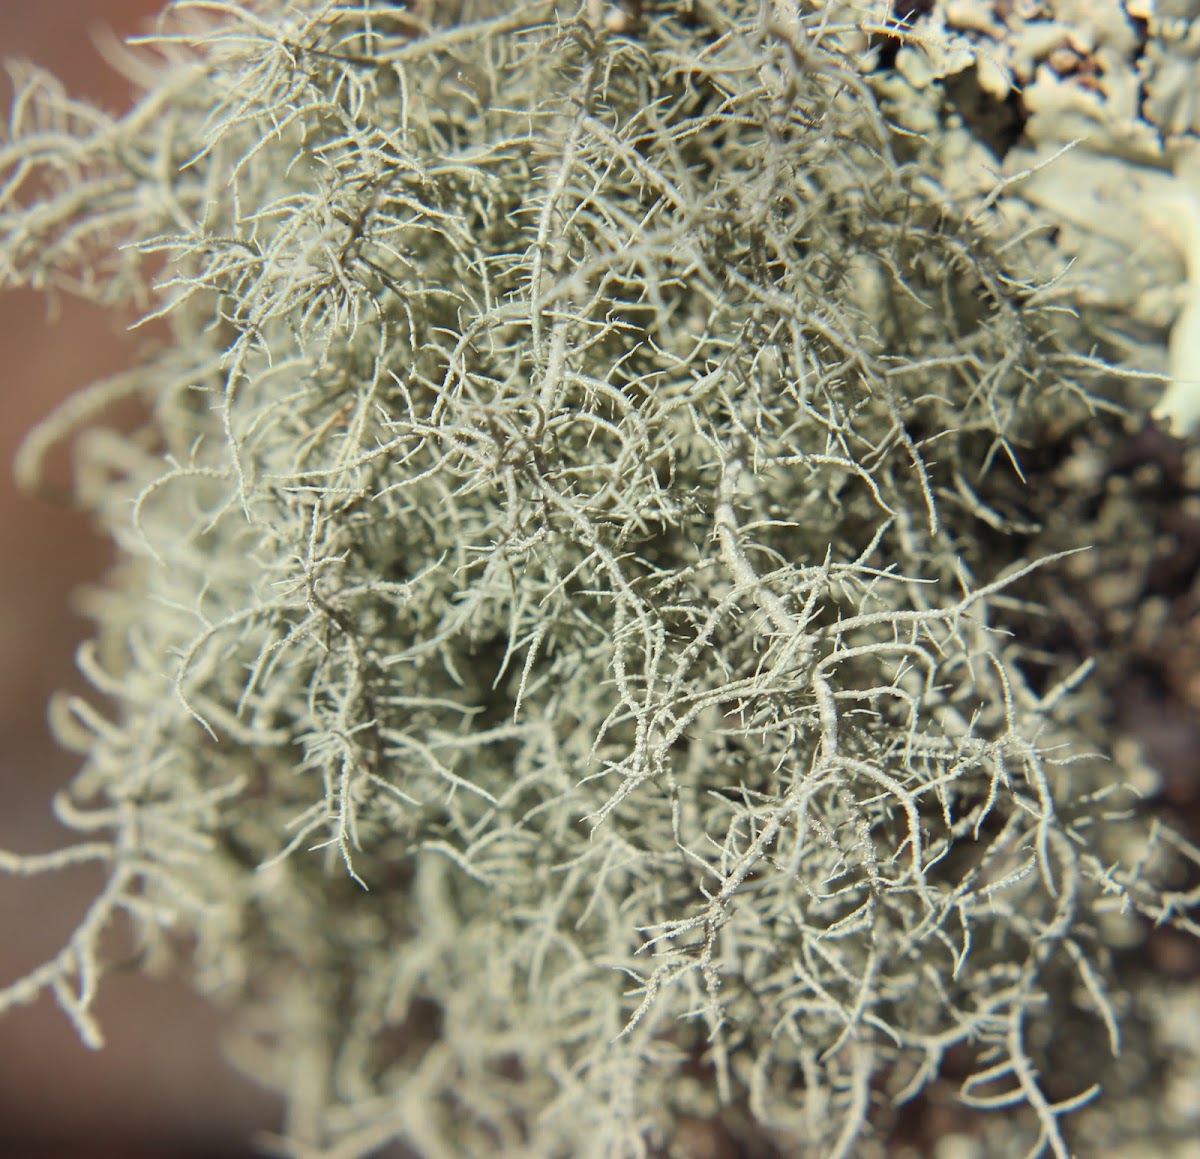 Fishbone beard lichen